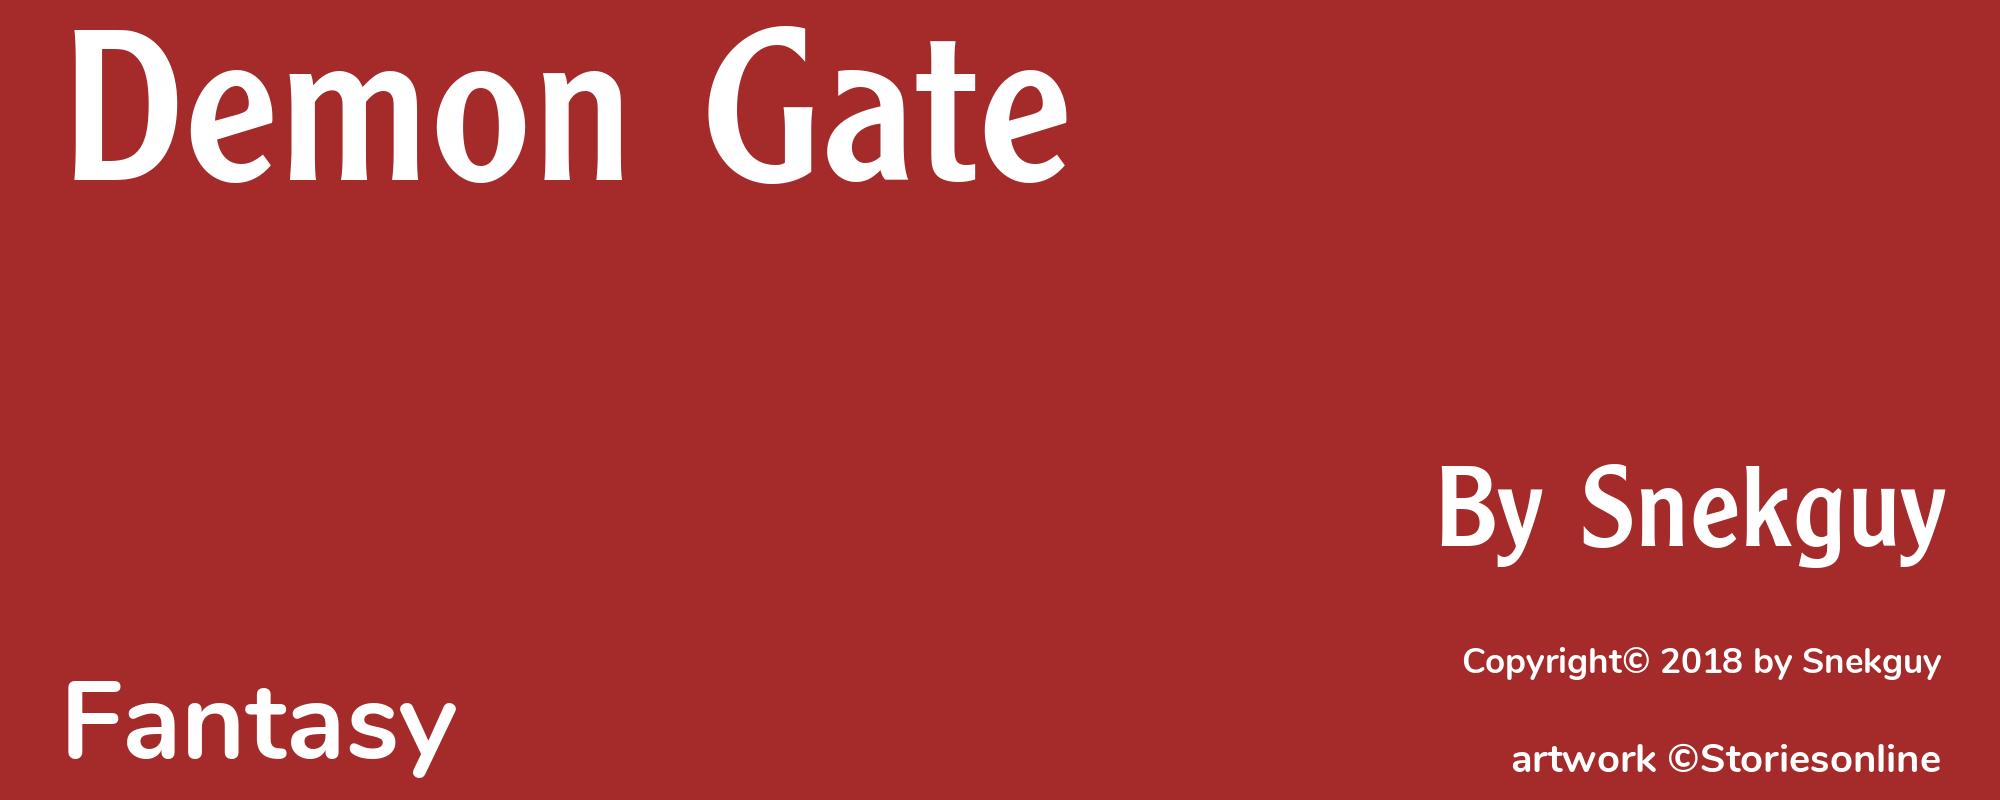 Demon Gate - Cover